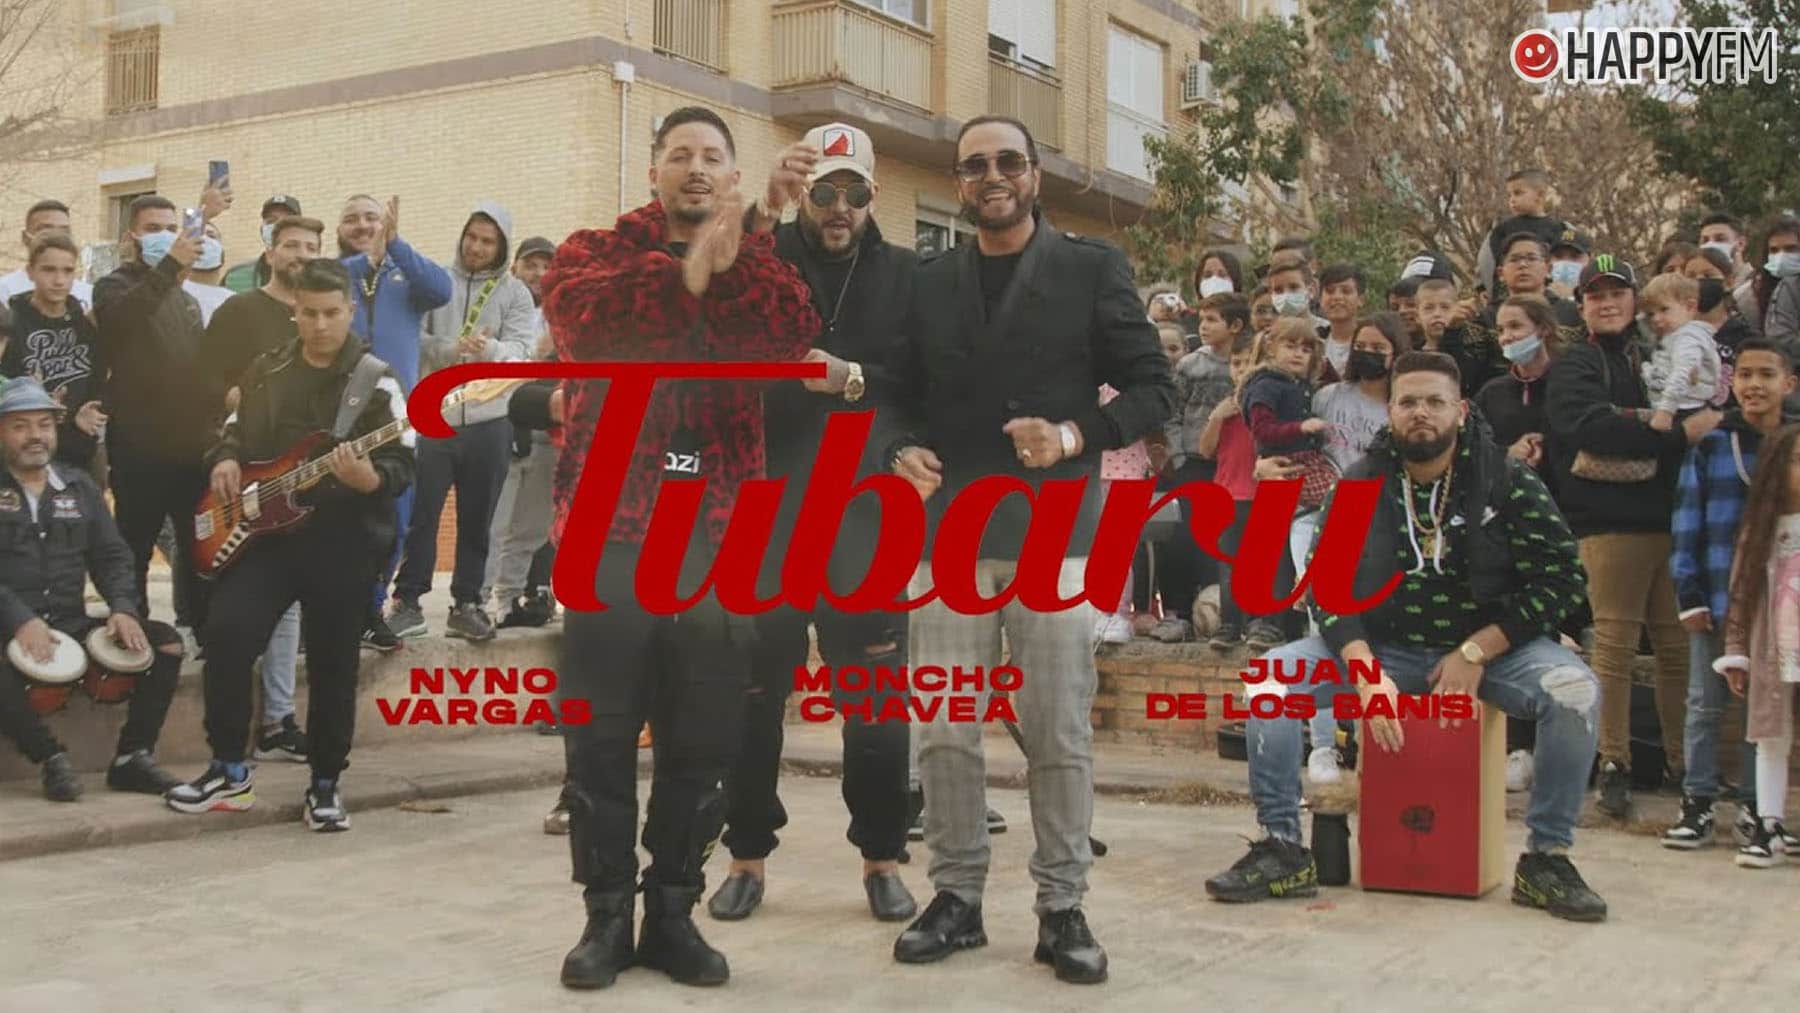 ‘Tubaru’, de Nyno Vargas, Moncho Chavea y Banis: letra y vídeo